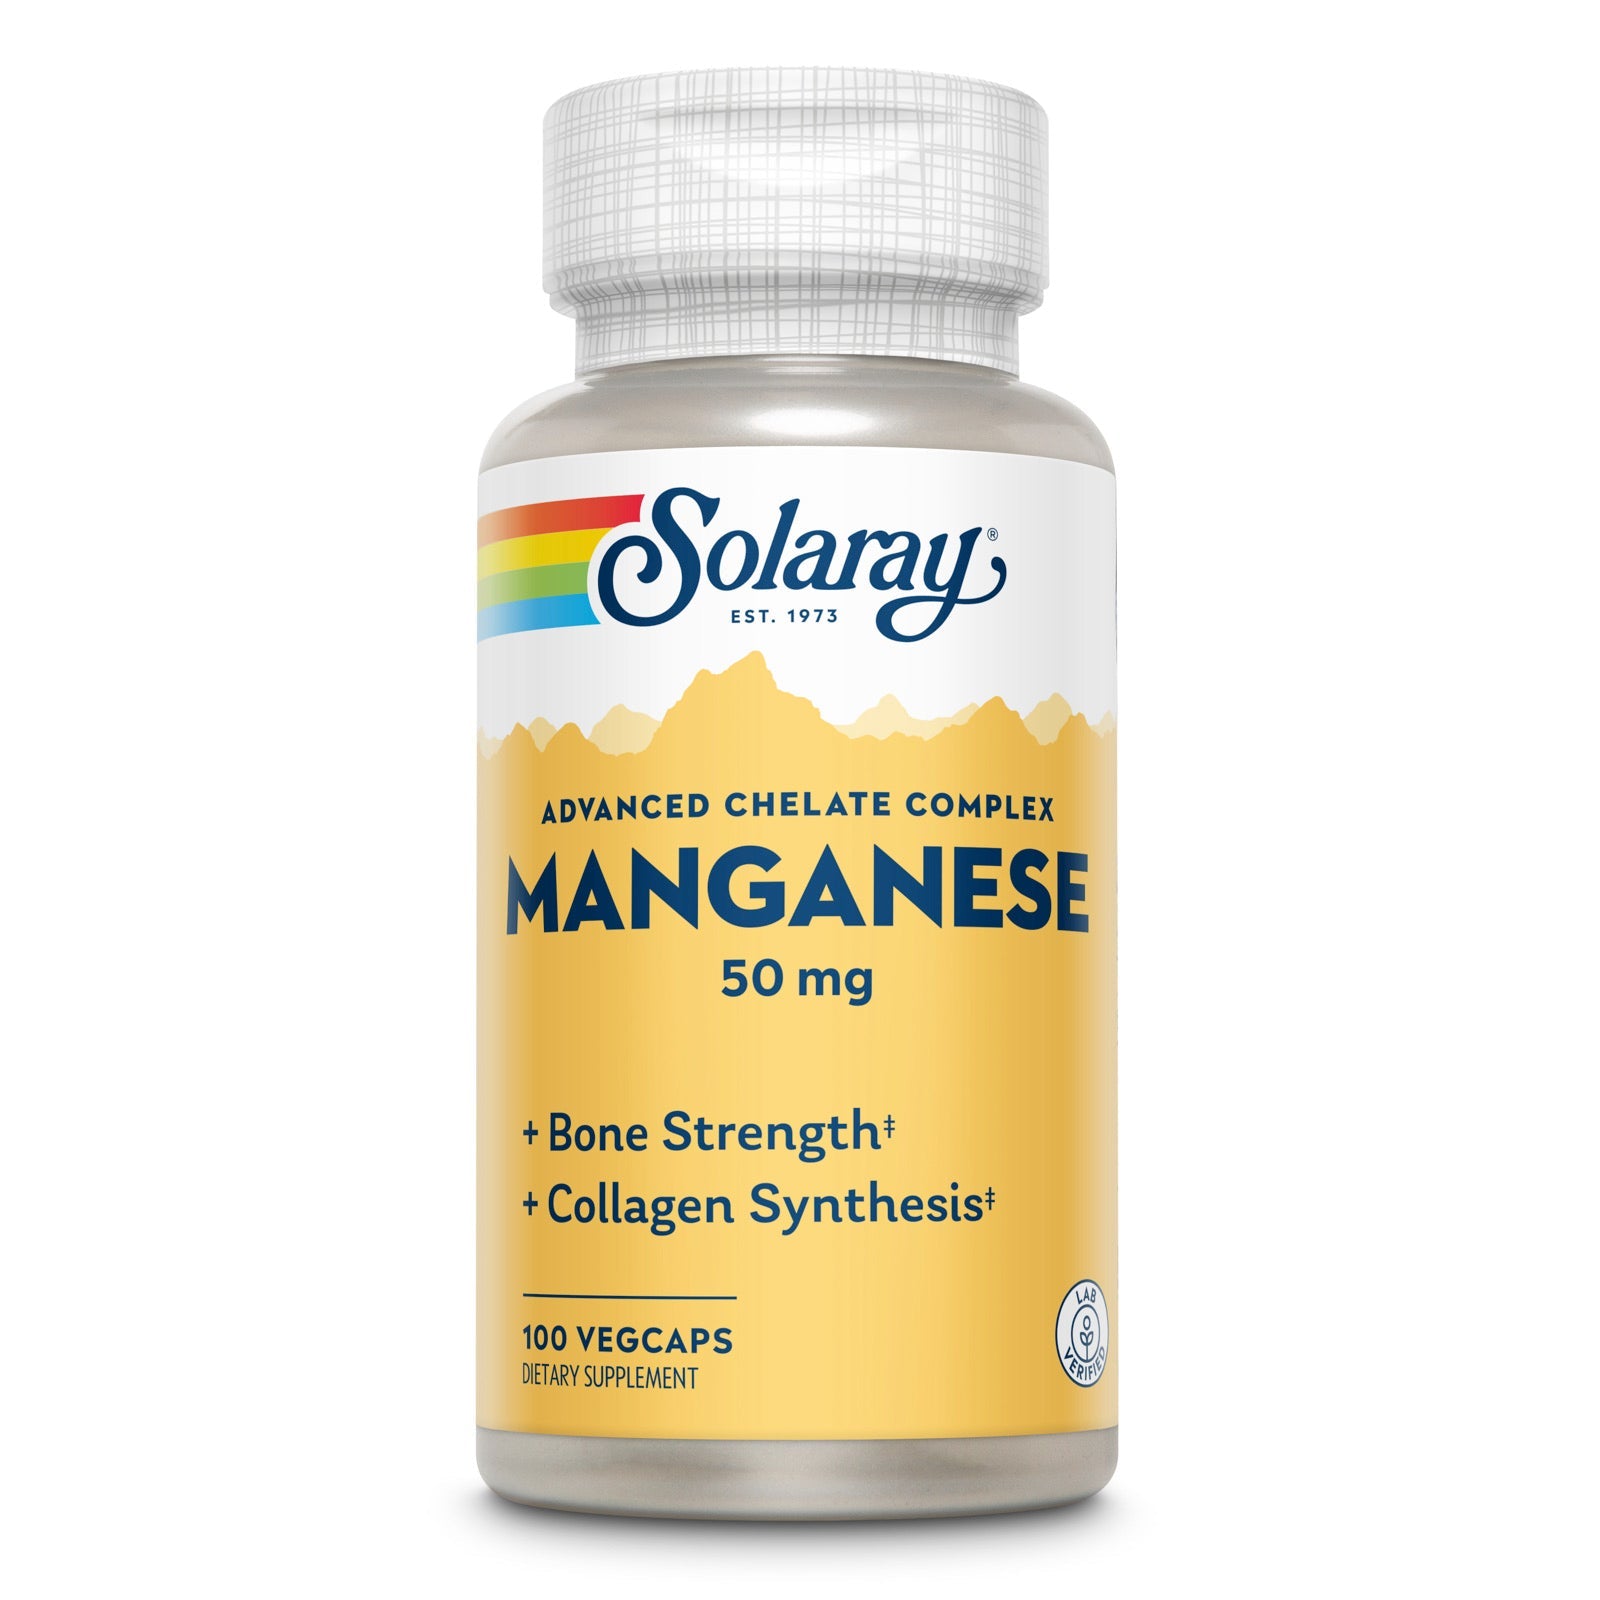 Solaray Manganese Supplement, 50 Mg